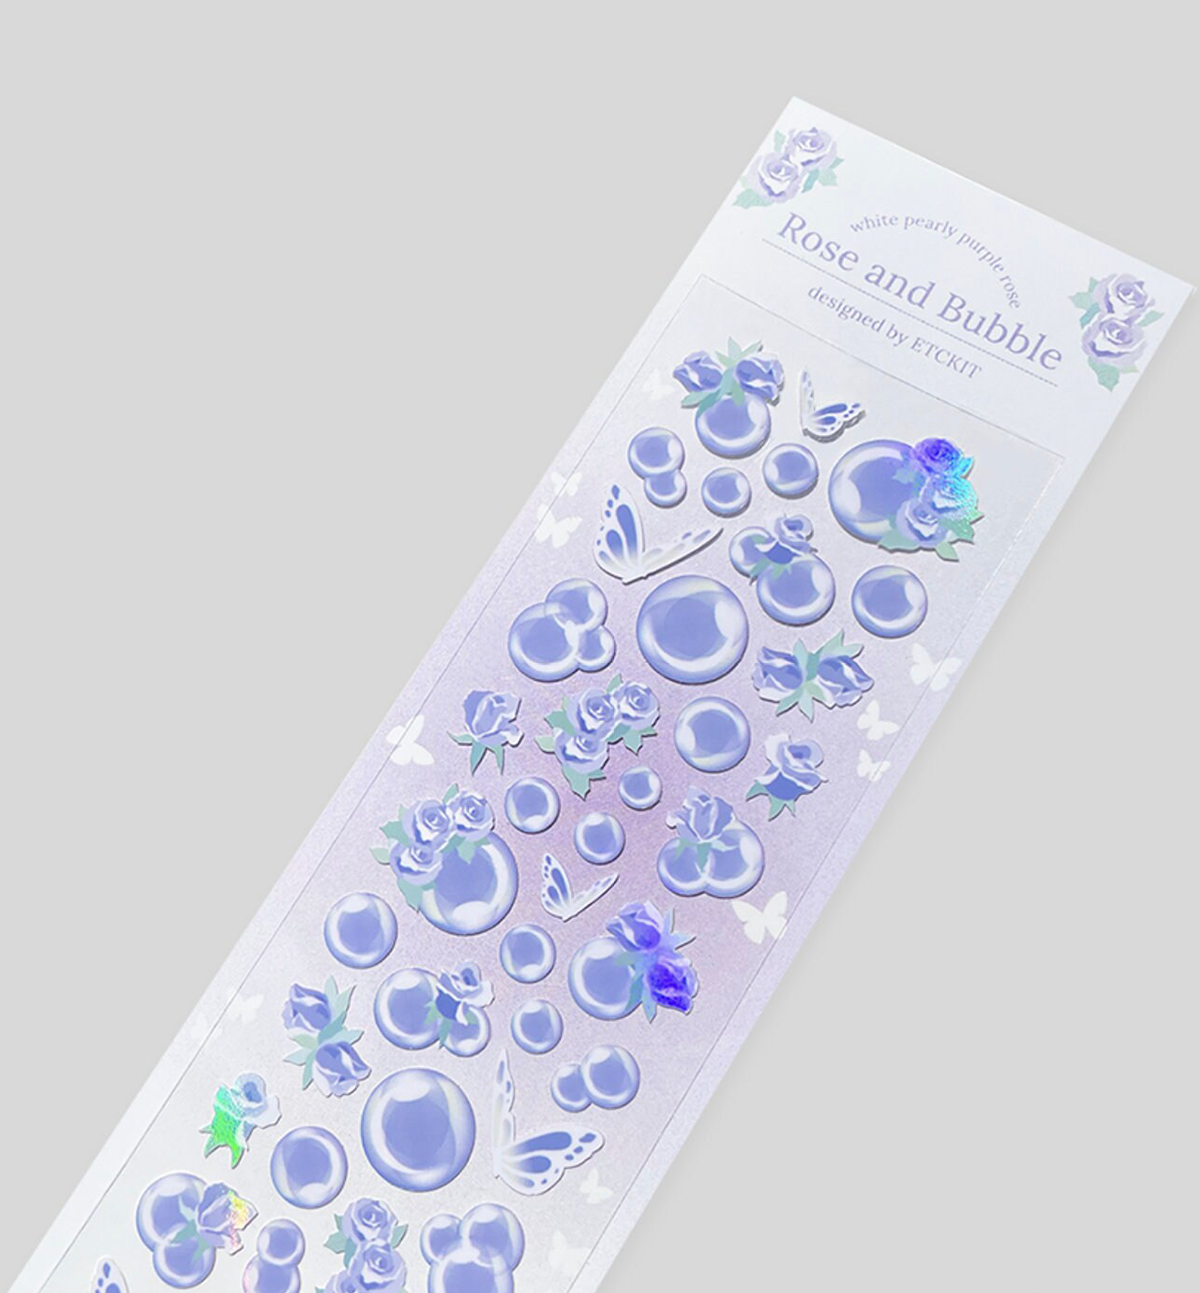 Rose & Bubble Seal Sticker